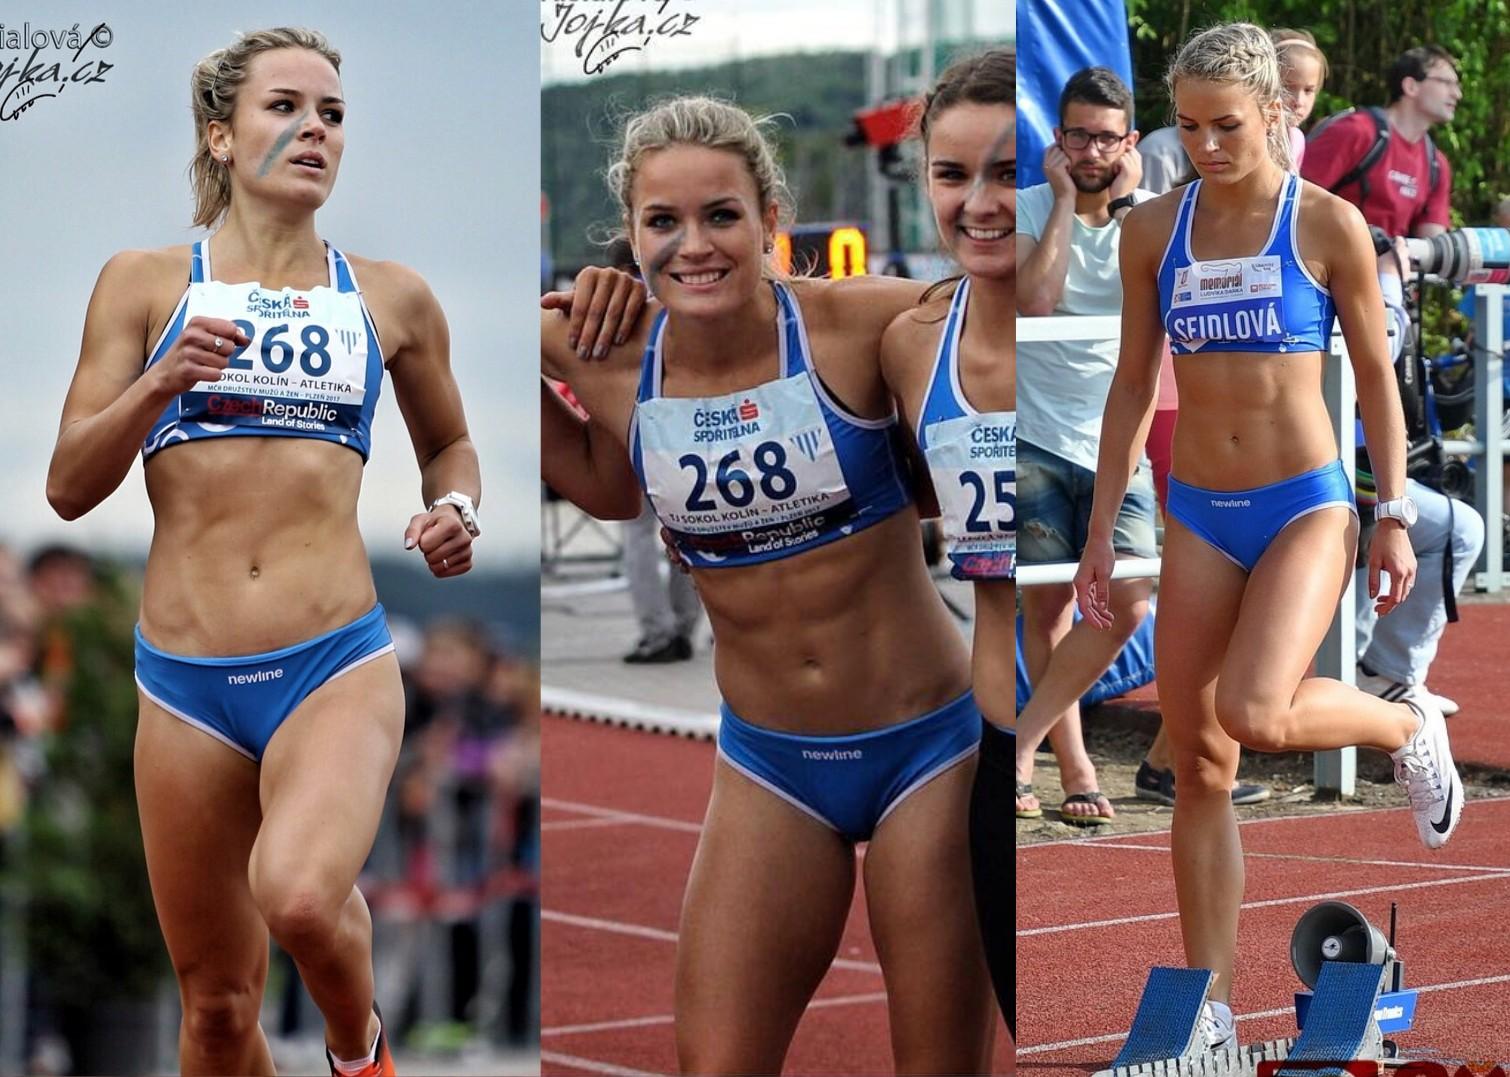 Czech Track Athlete Zdenka Seidlov